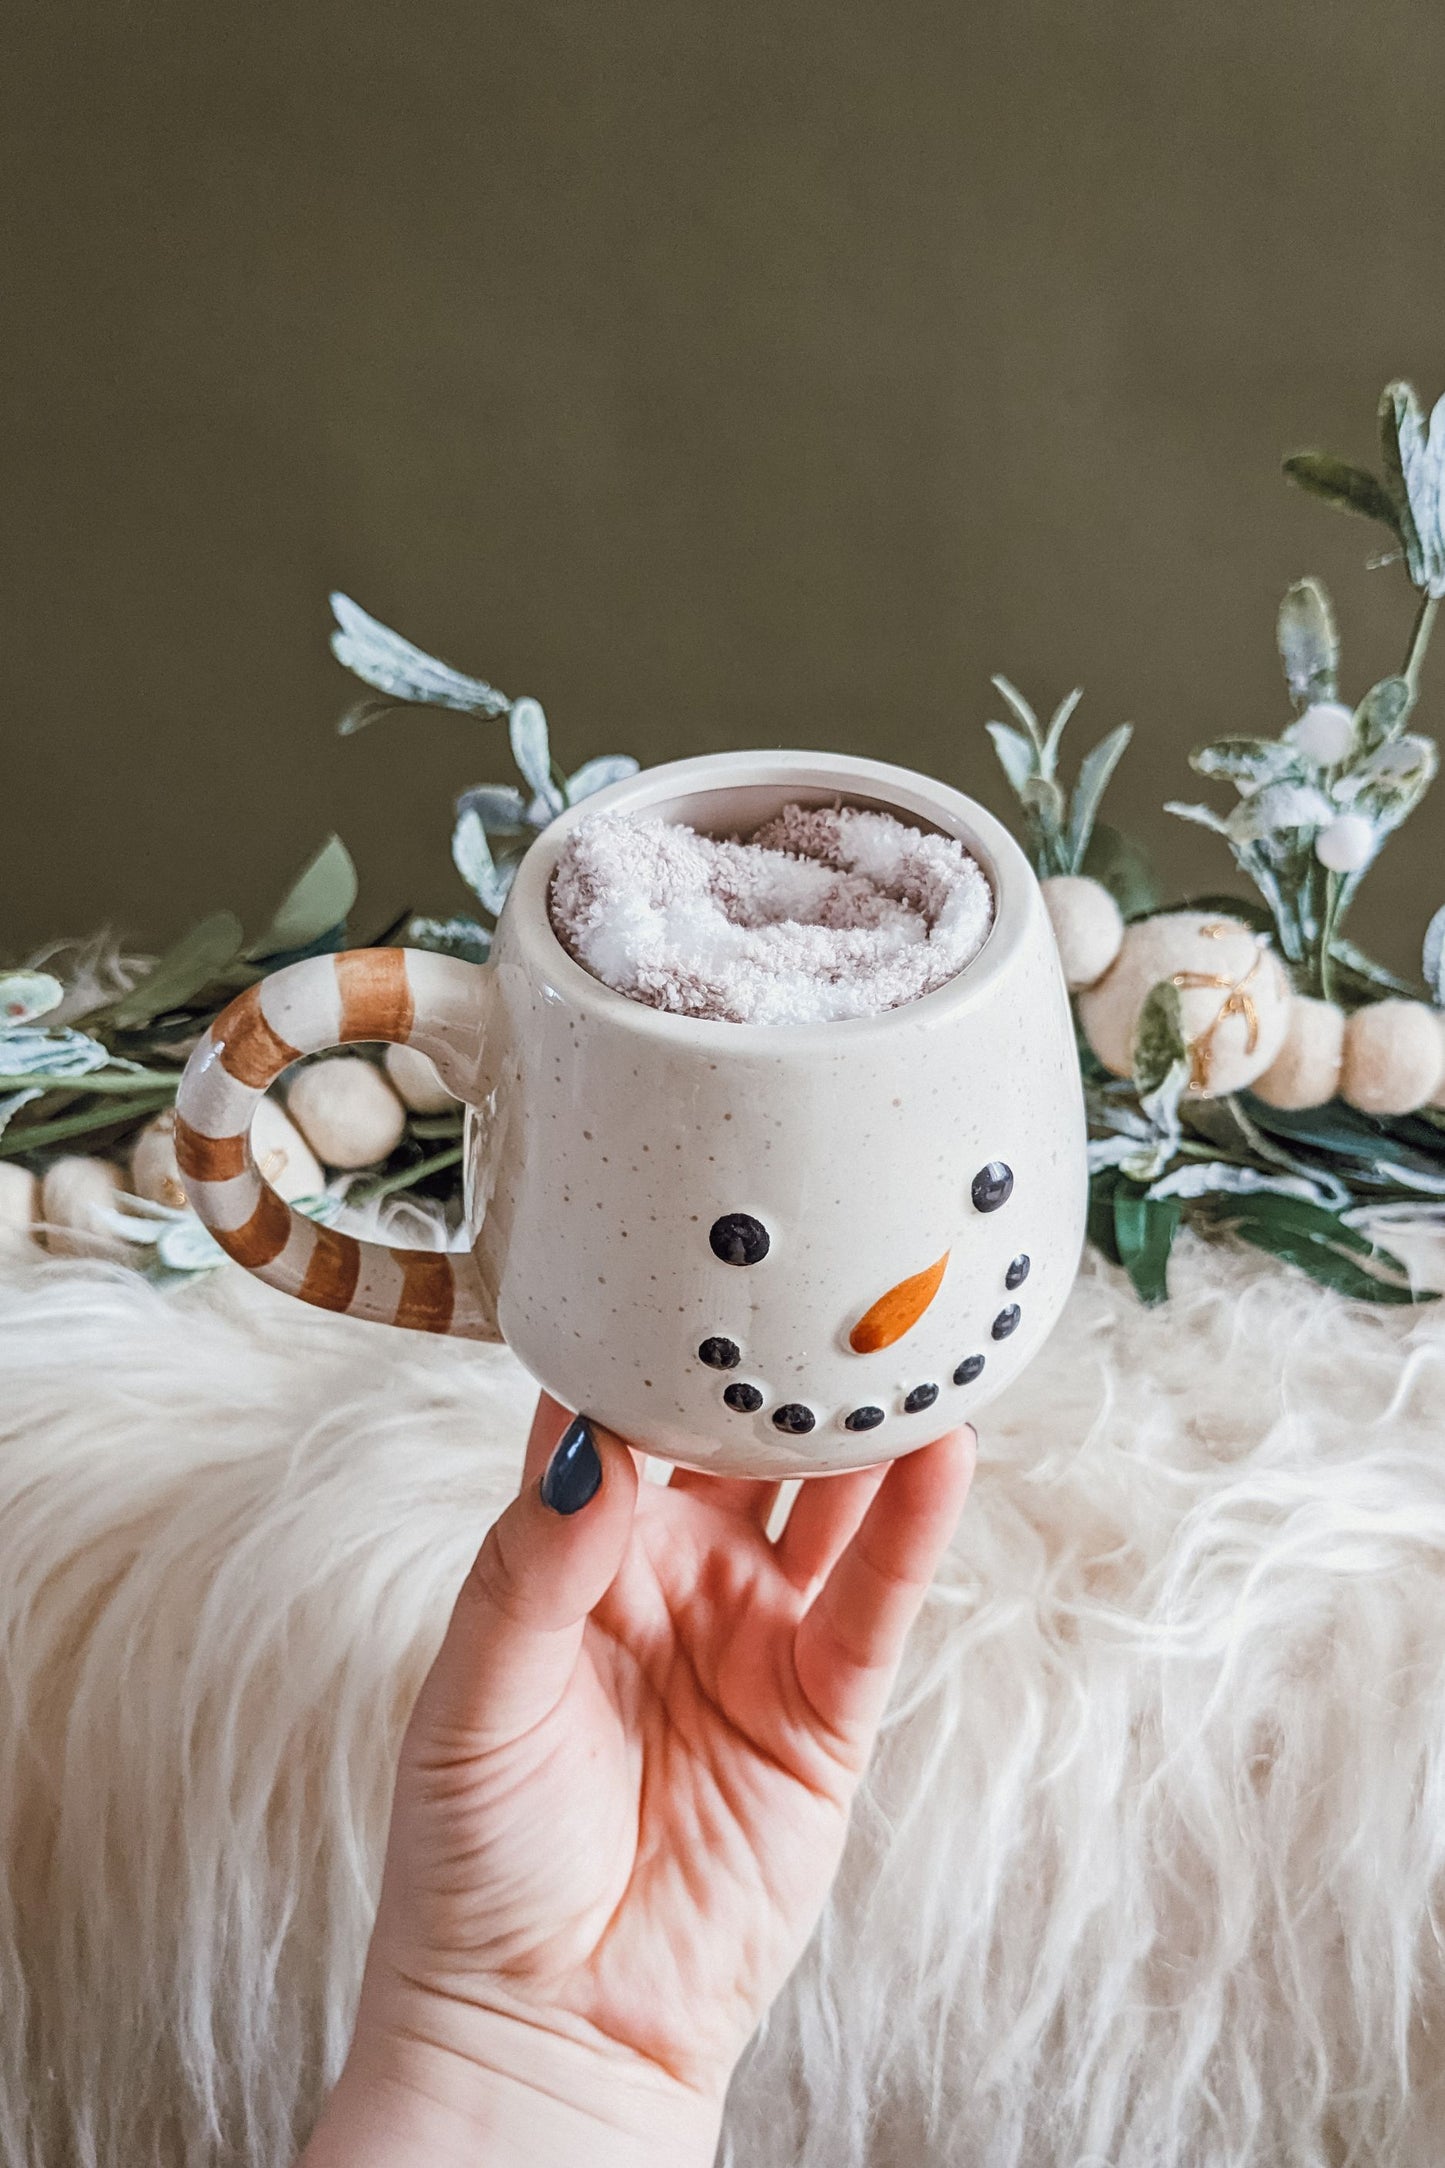 The Snowman Ceramic Mug + Socks